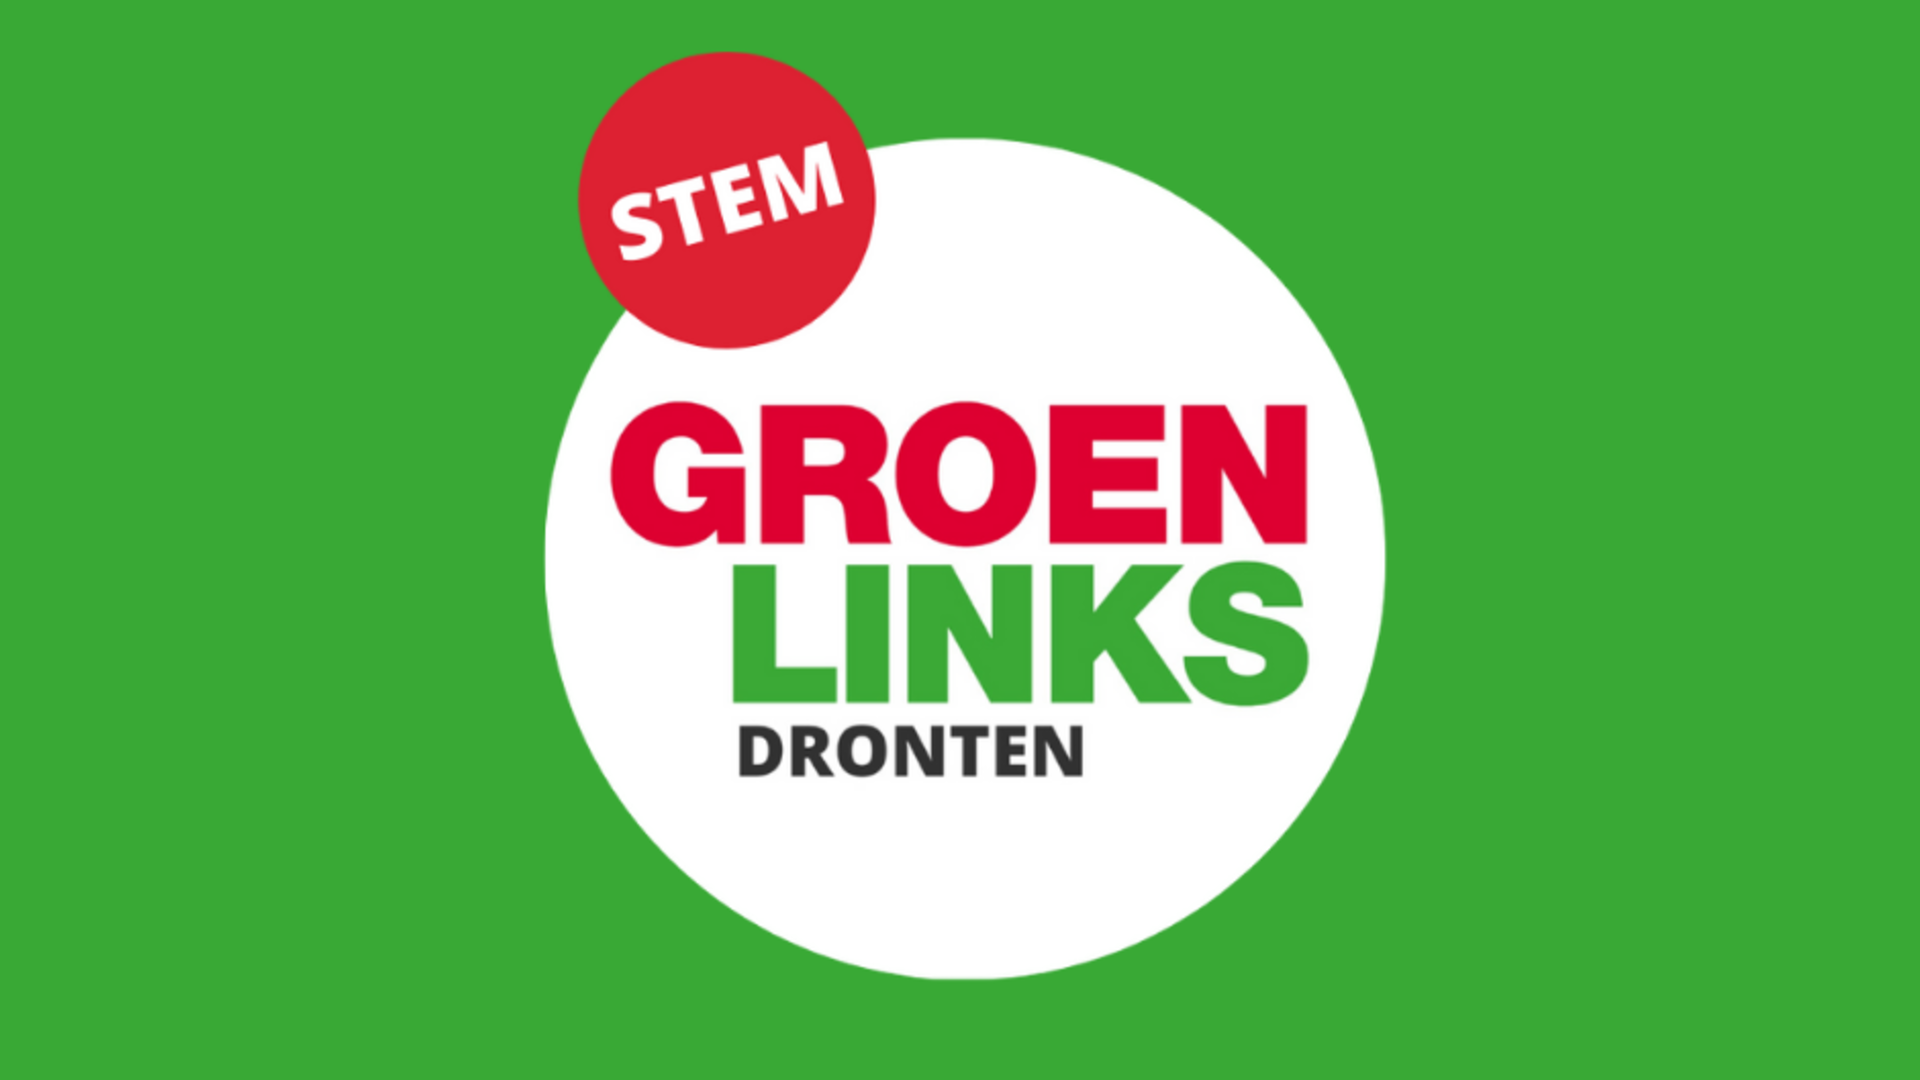 Stem GroenLinks Dronten